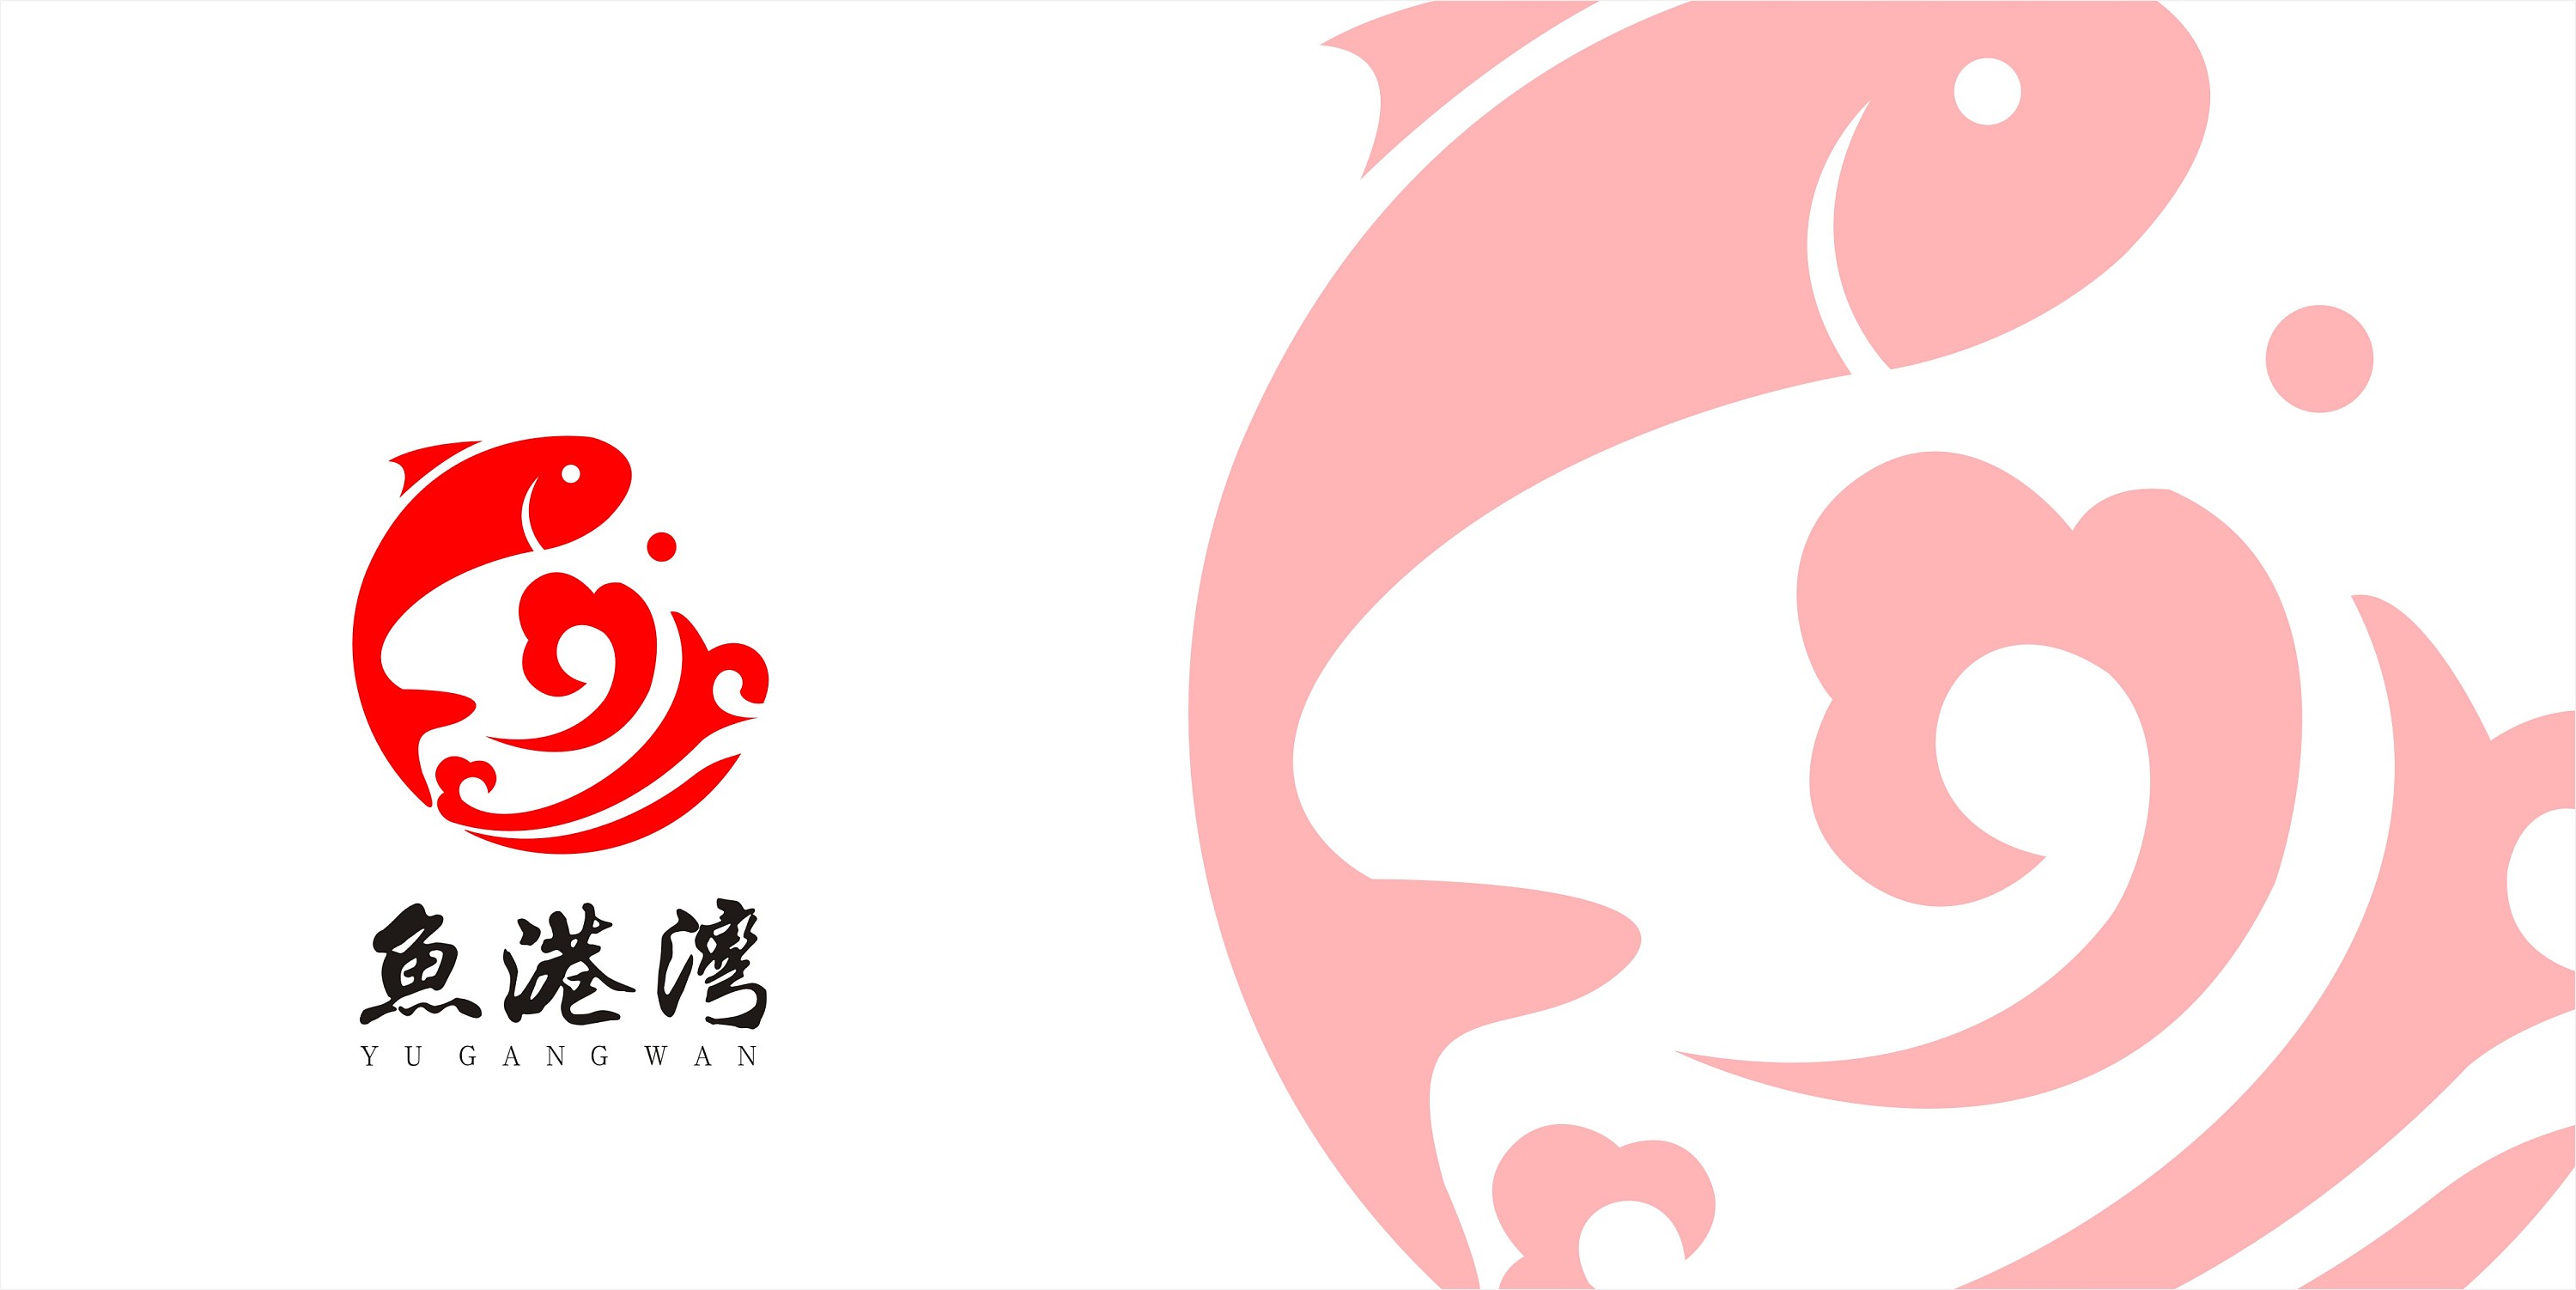 蓝色小鱼logo图片素材免费下载 - 觅知网